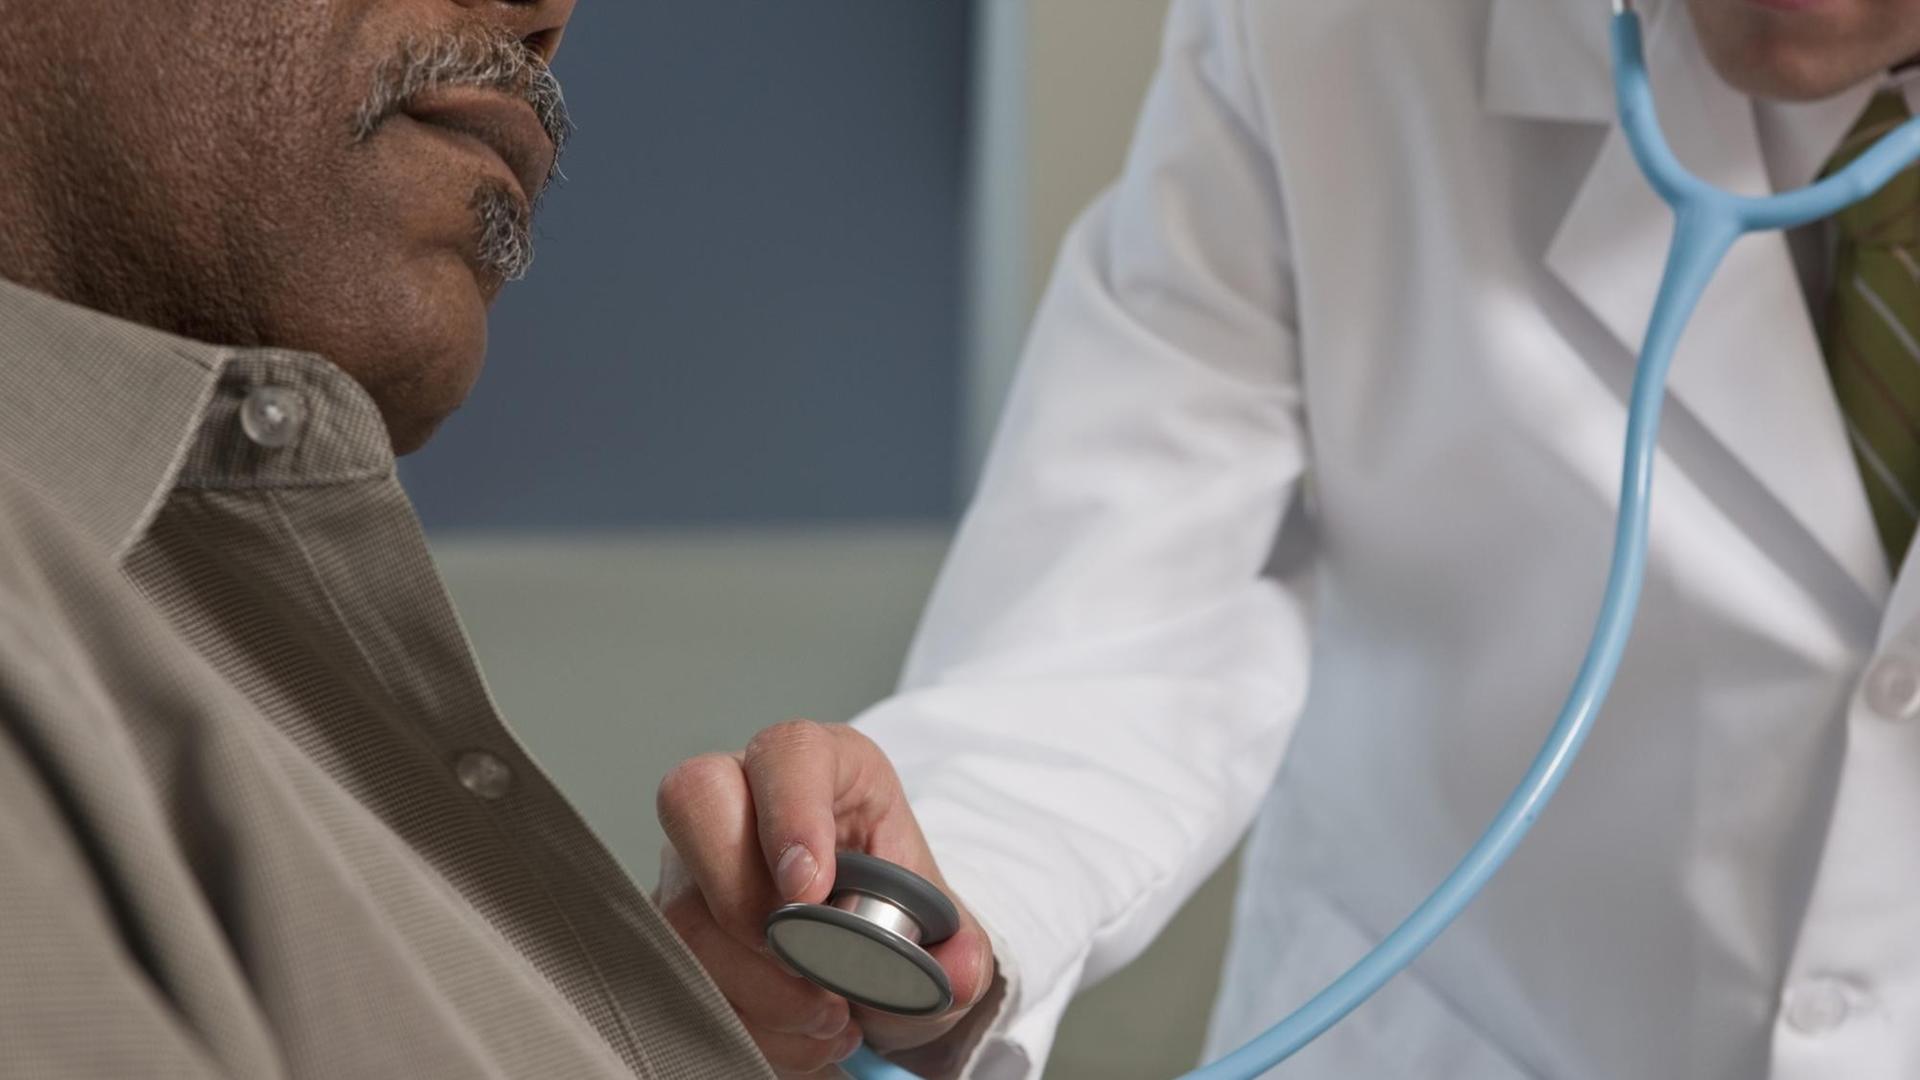 Ein Arzt hört die Brust eines Mannes mit einem Stethoskop ab.